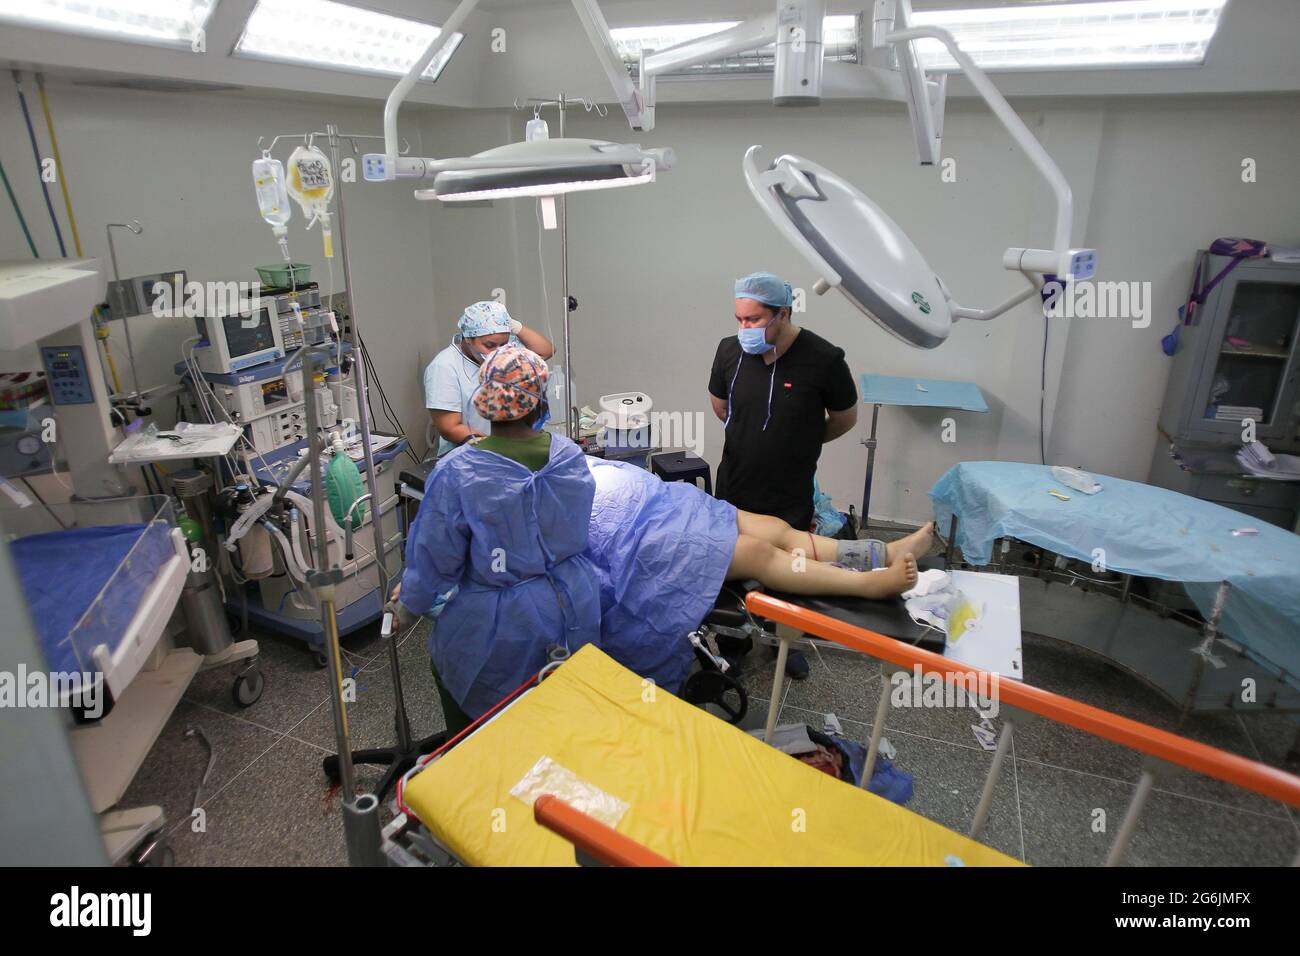 Maracaibo-Venezuela-19-06-2015-Maternety Un medico parla con il suo paziente in una sala operatoria prima di eseguire il taglio cesareo. Foto di José Bula Foto Stock